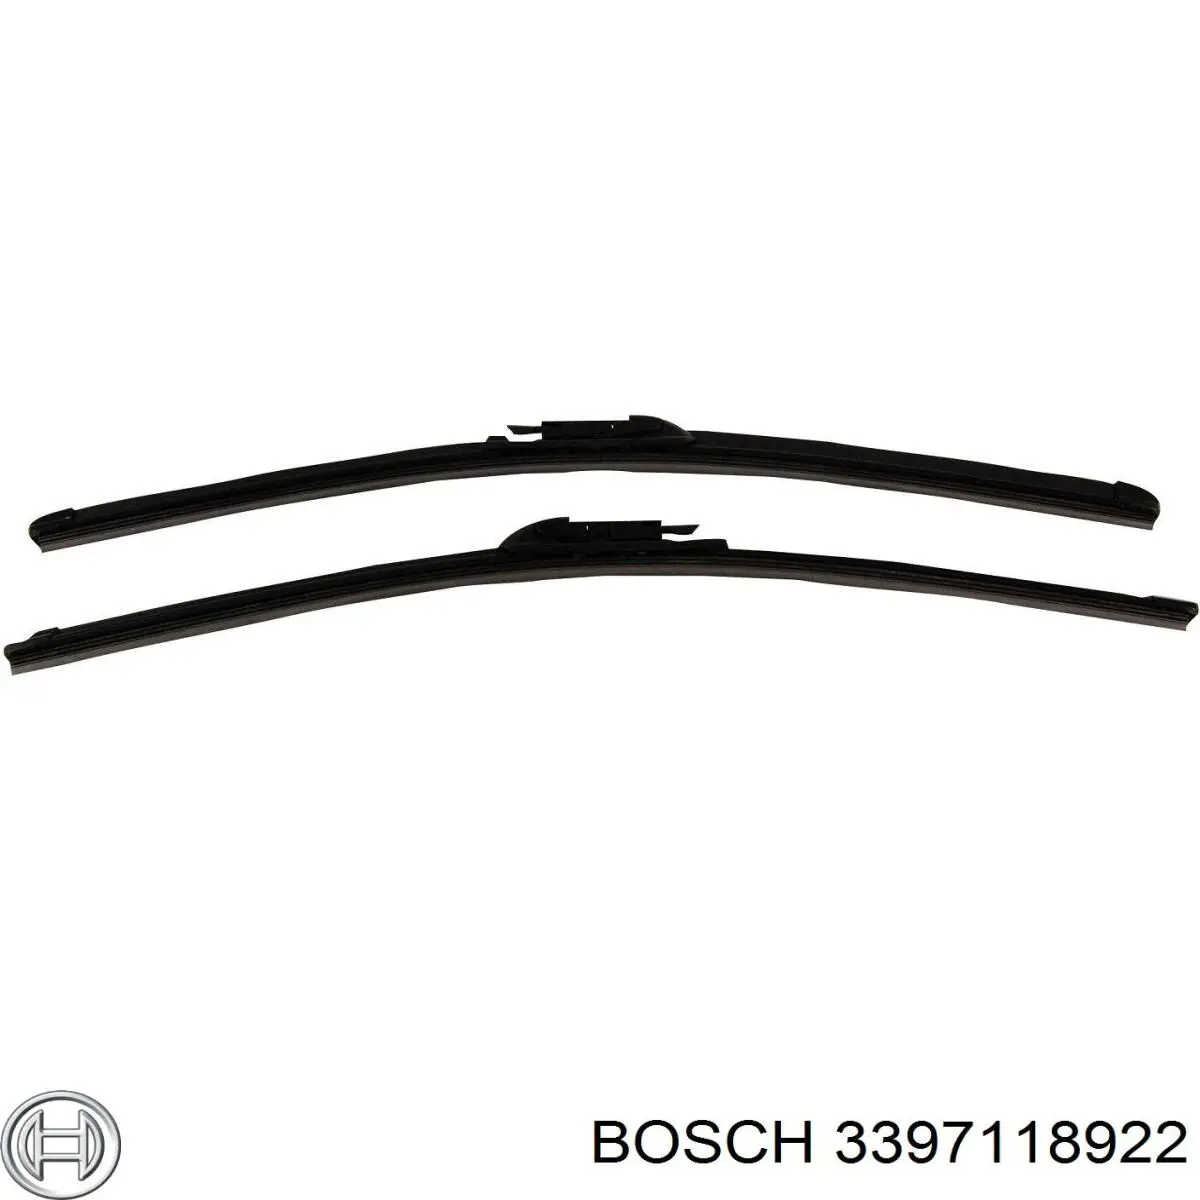 3397118922 Bosch щетка-дворник лобового стекла, комплект из 2 шт.